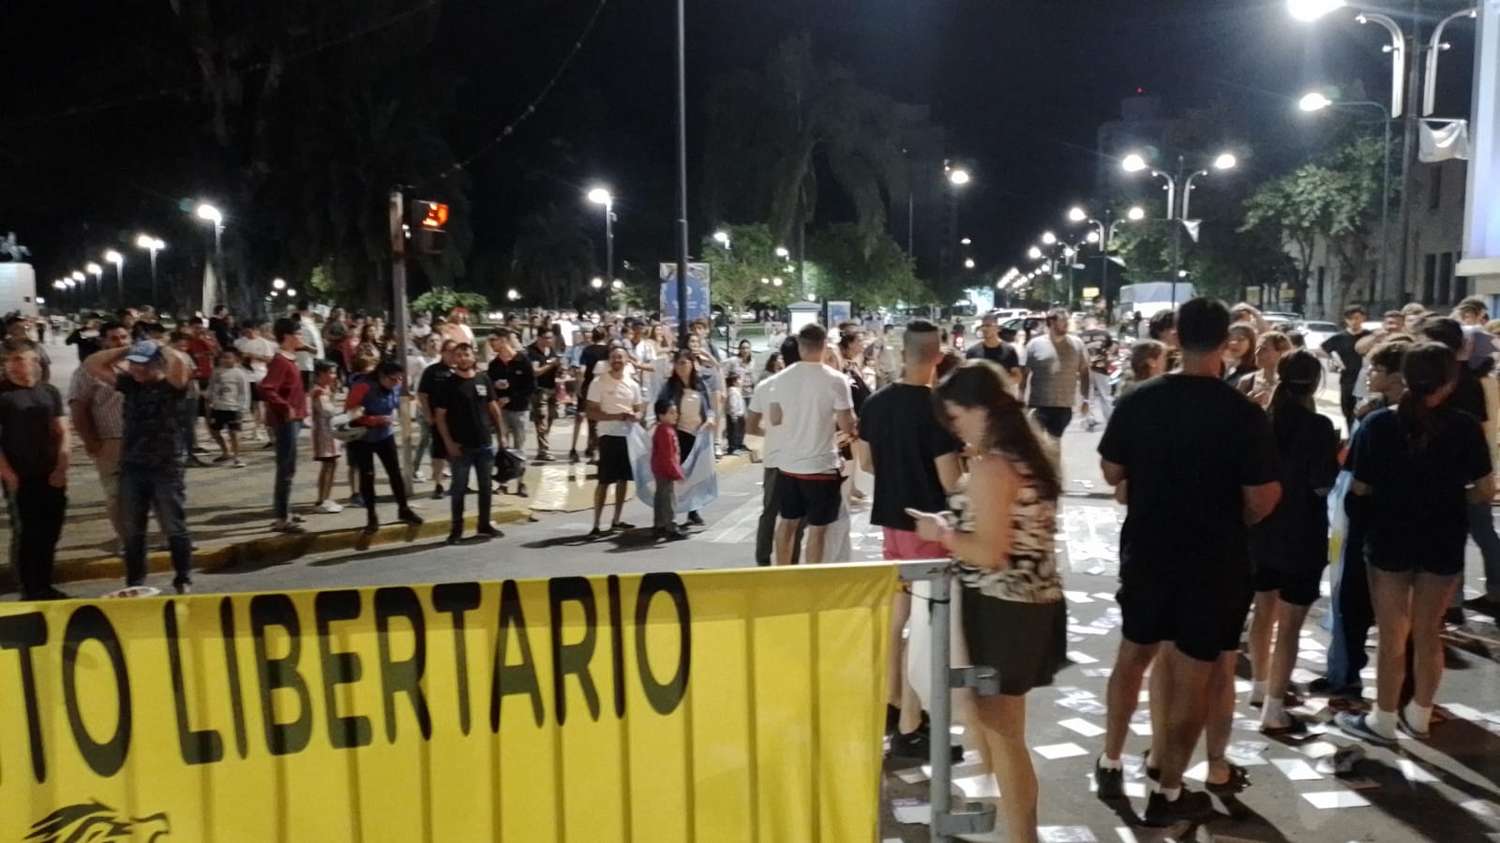 Los libertarios venadenses eligieron la plaza San Martin para la celebración. Foto: Sur24